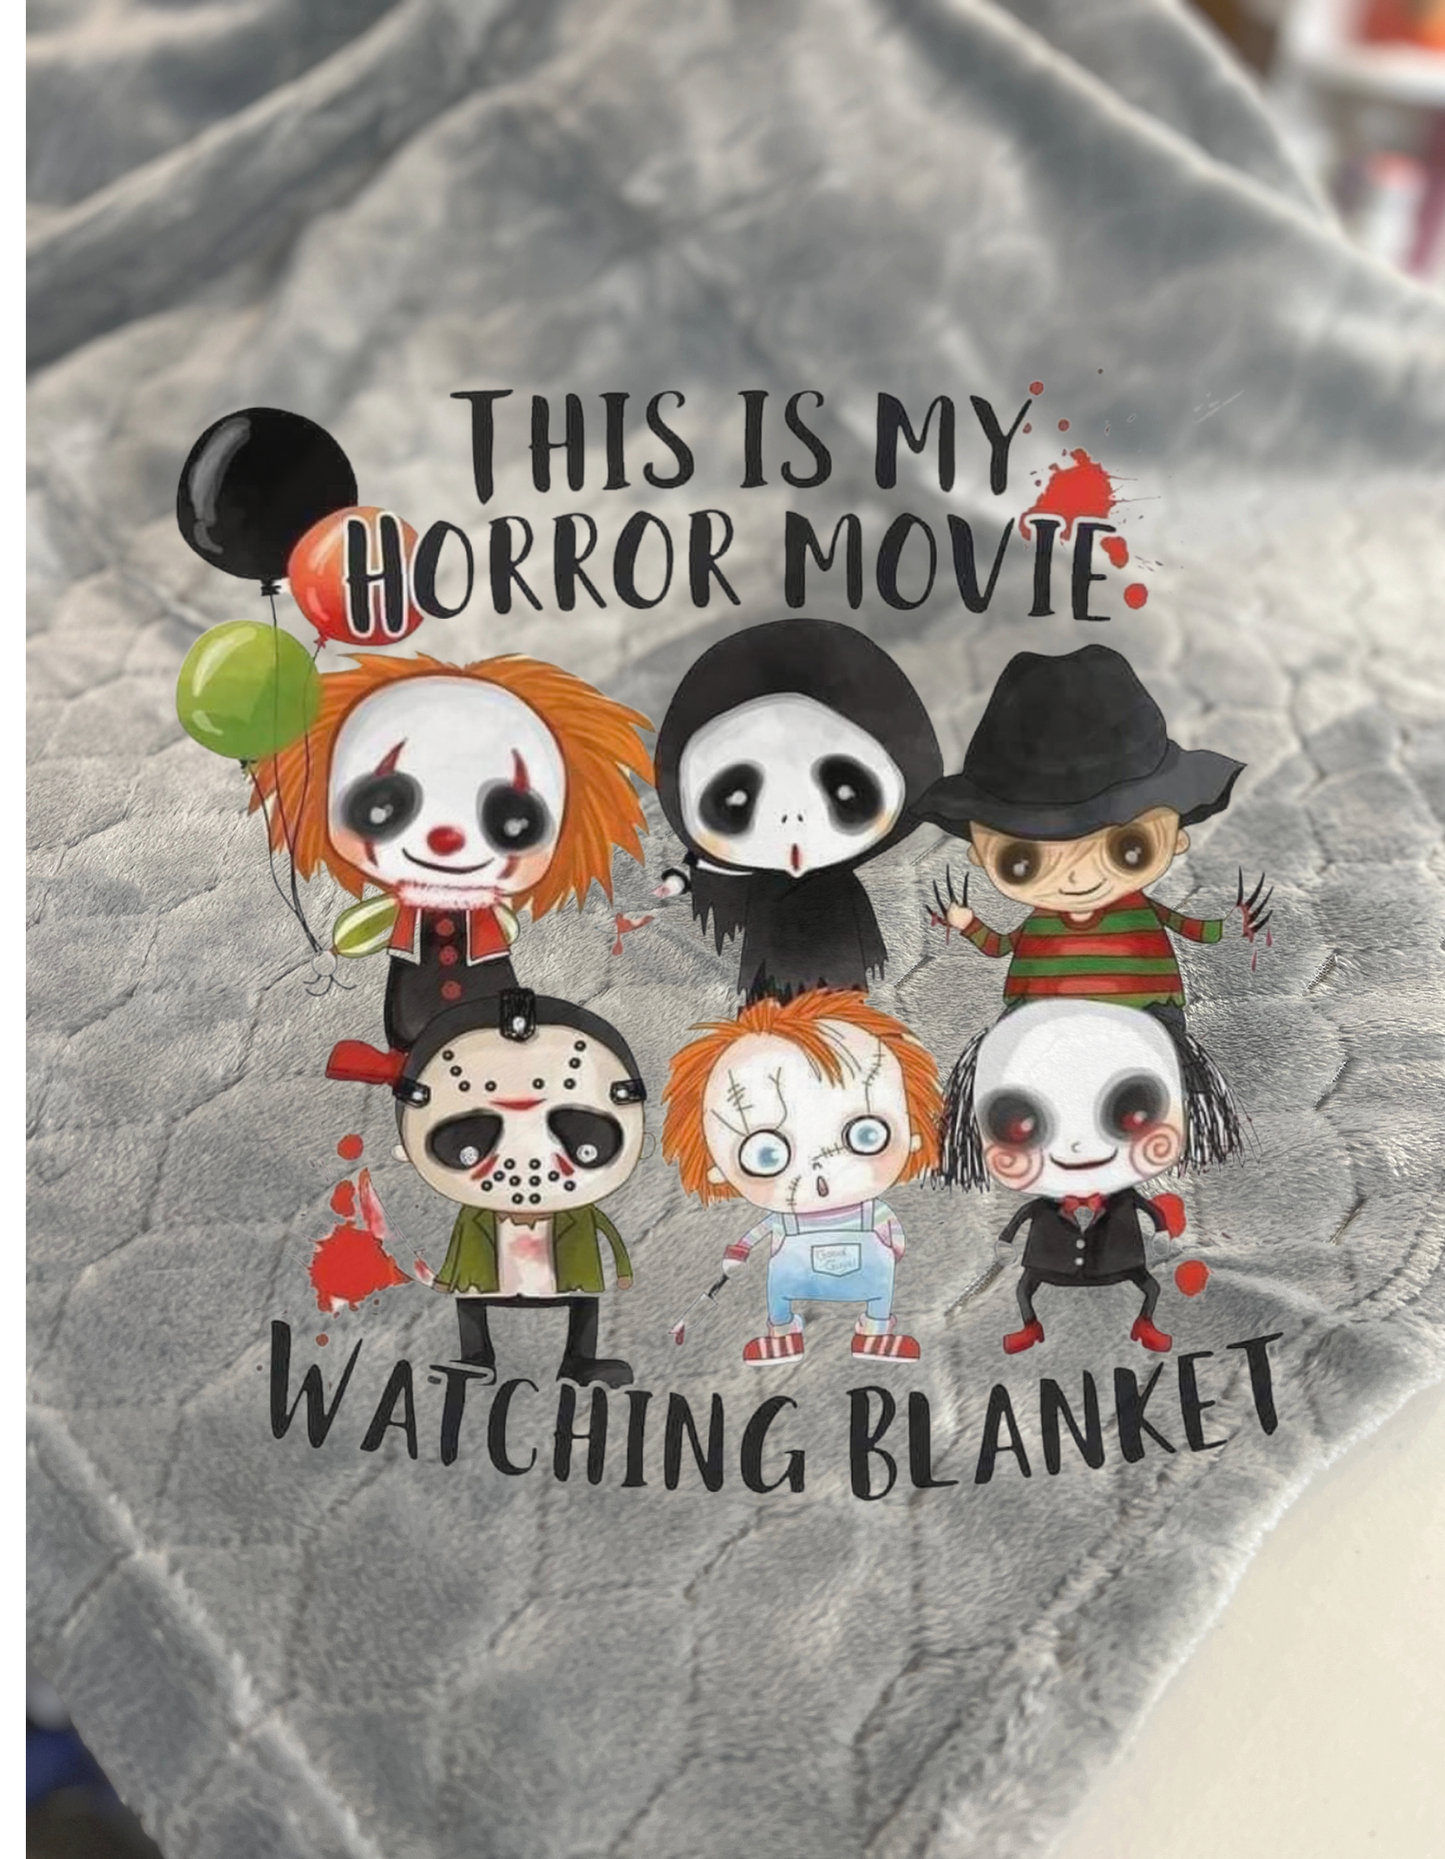 My Horror Movie Watching Blanket